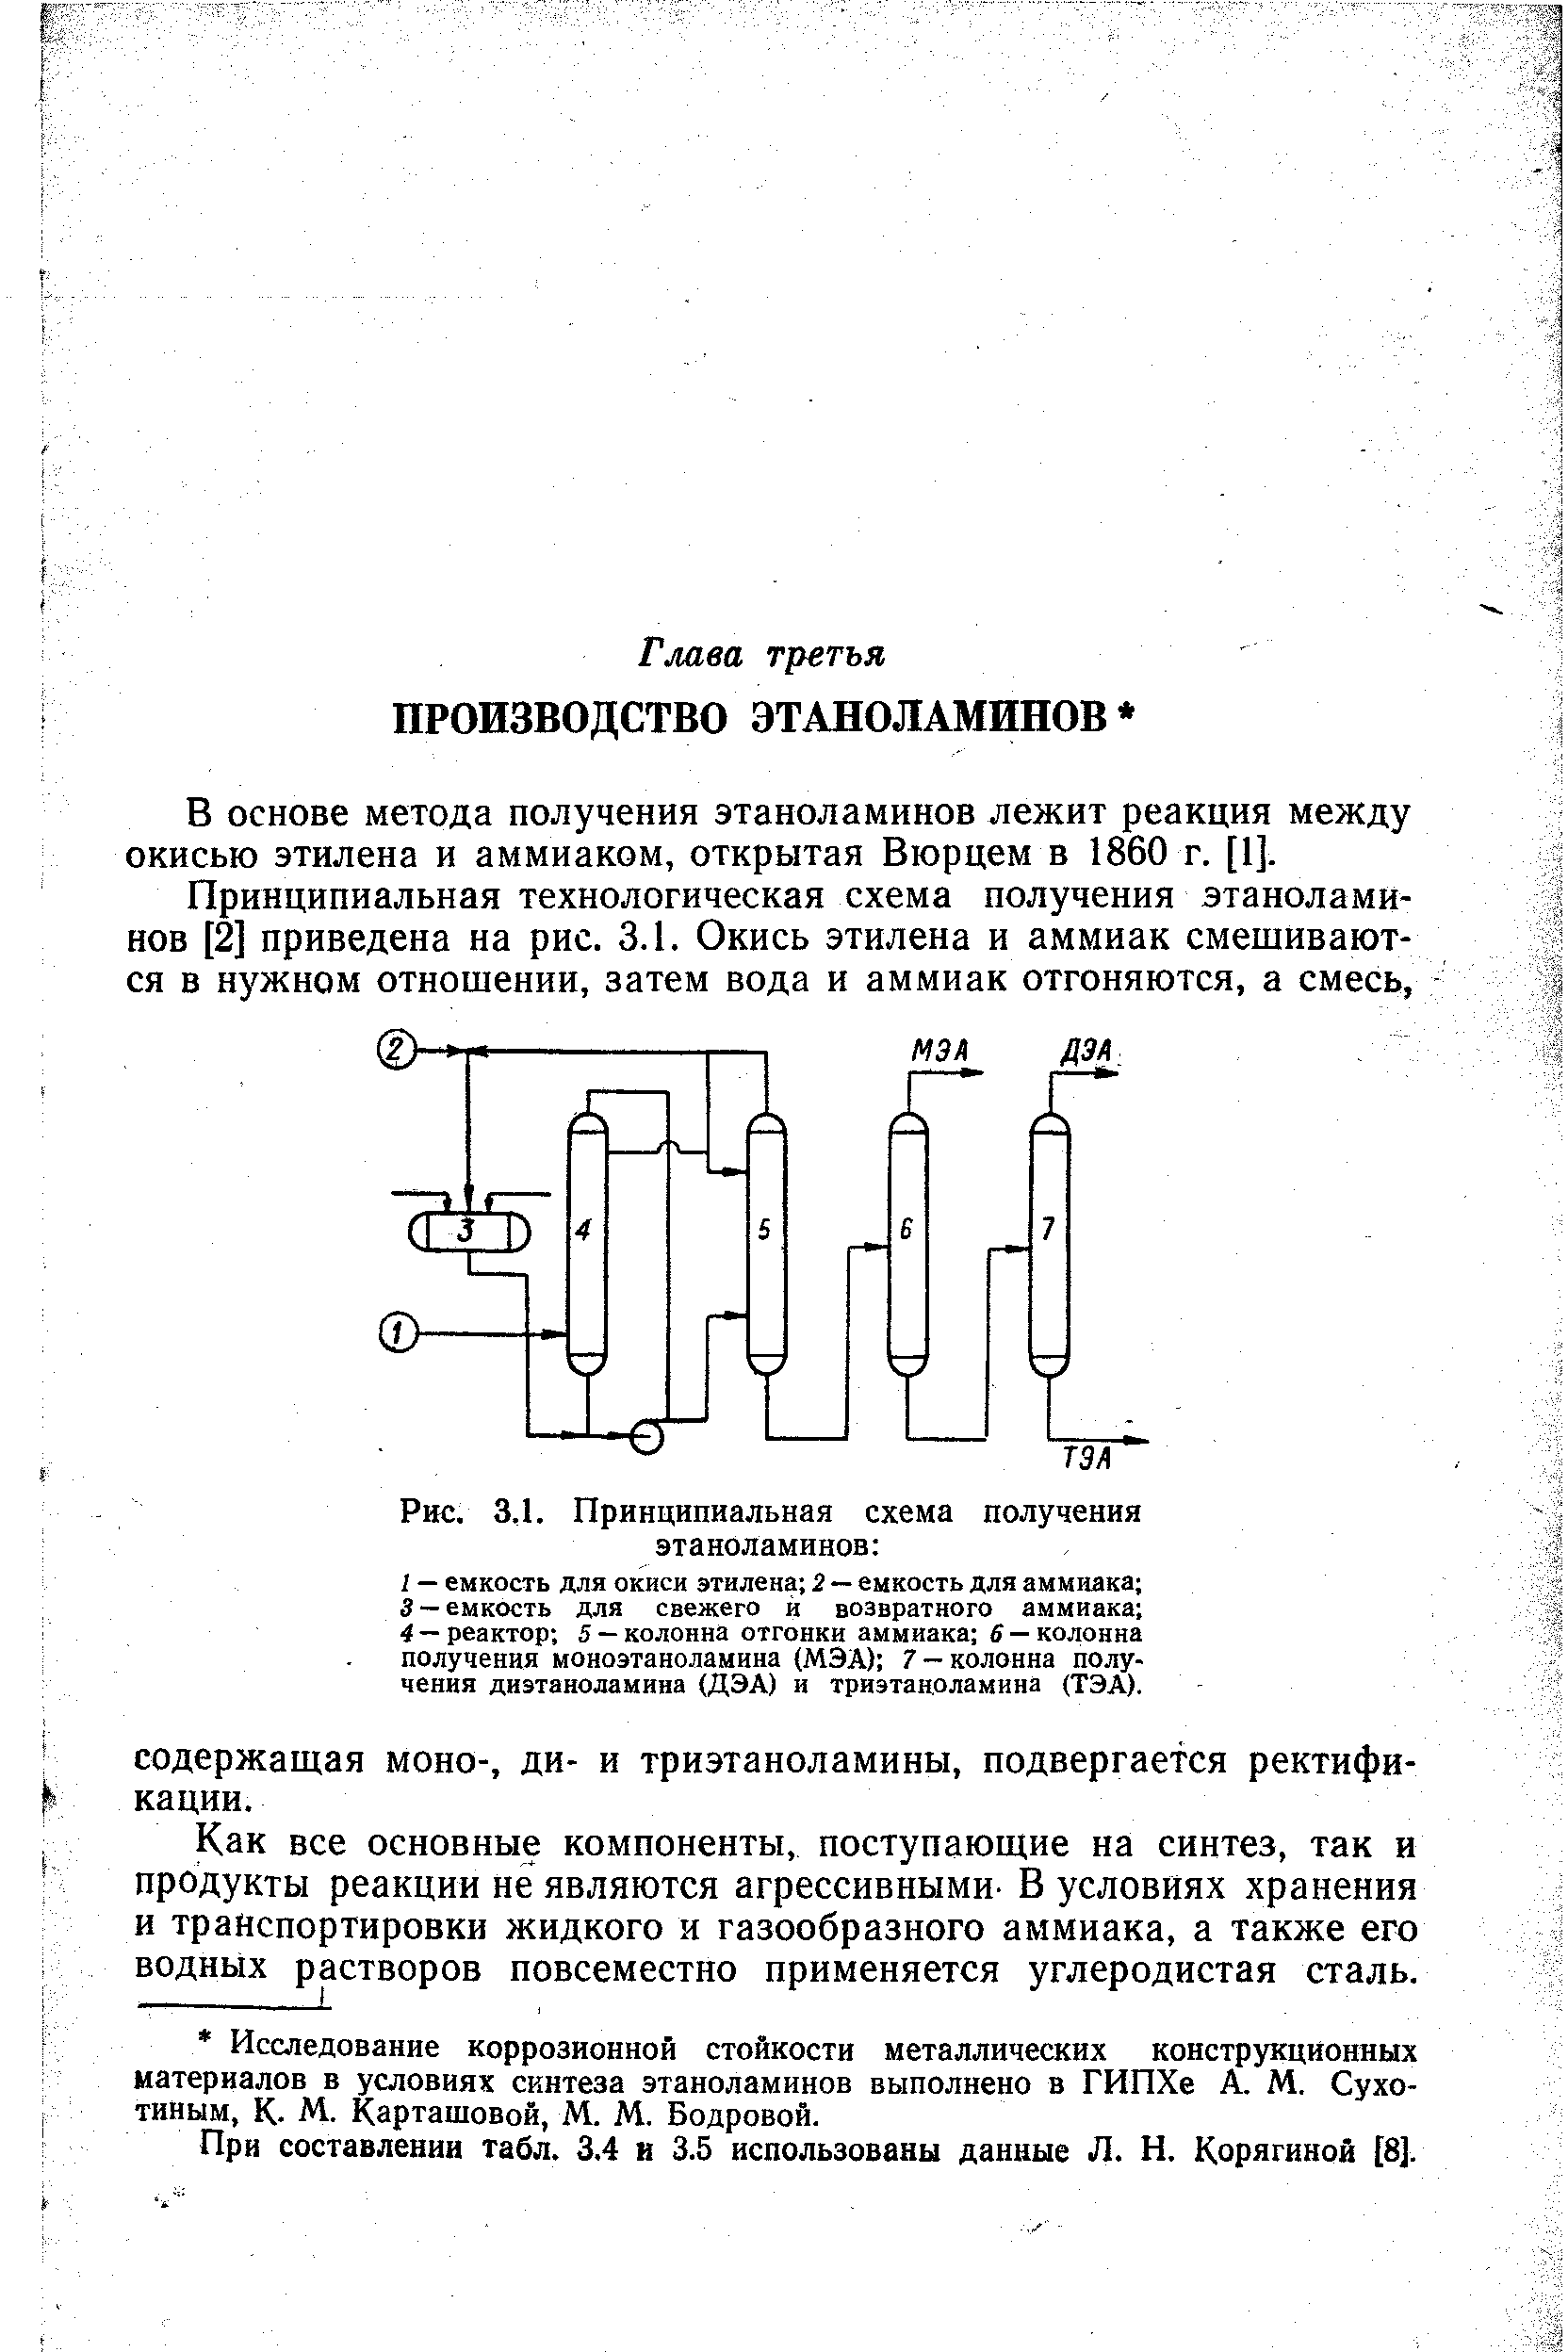 В основе метода получения этаноламинов лежит реакция между окисью этилена и аммиаком, открытая Вюрцем в 1860 г. [1].
